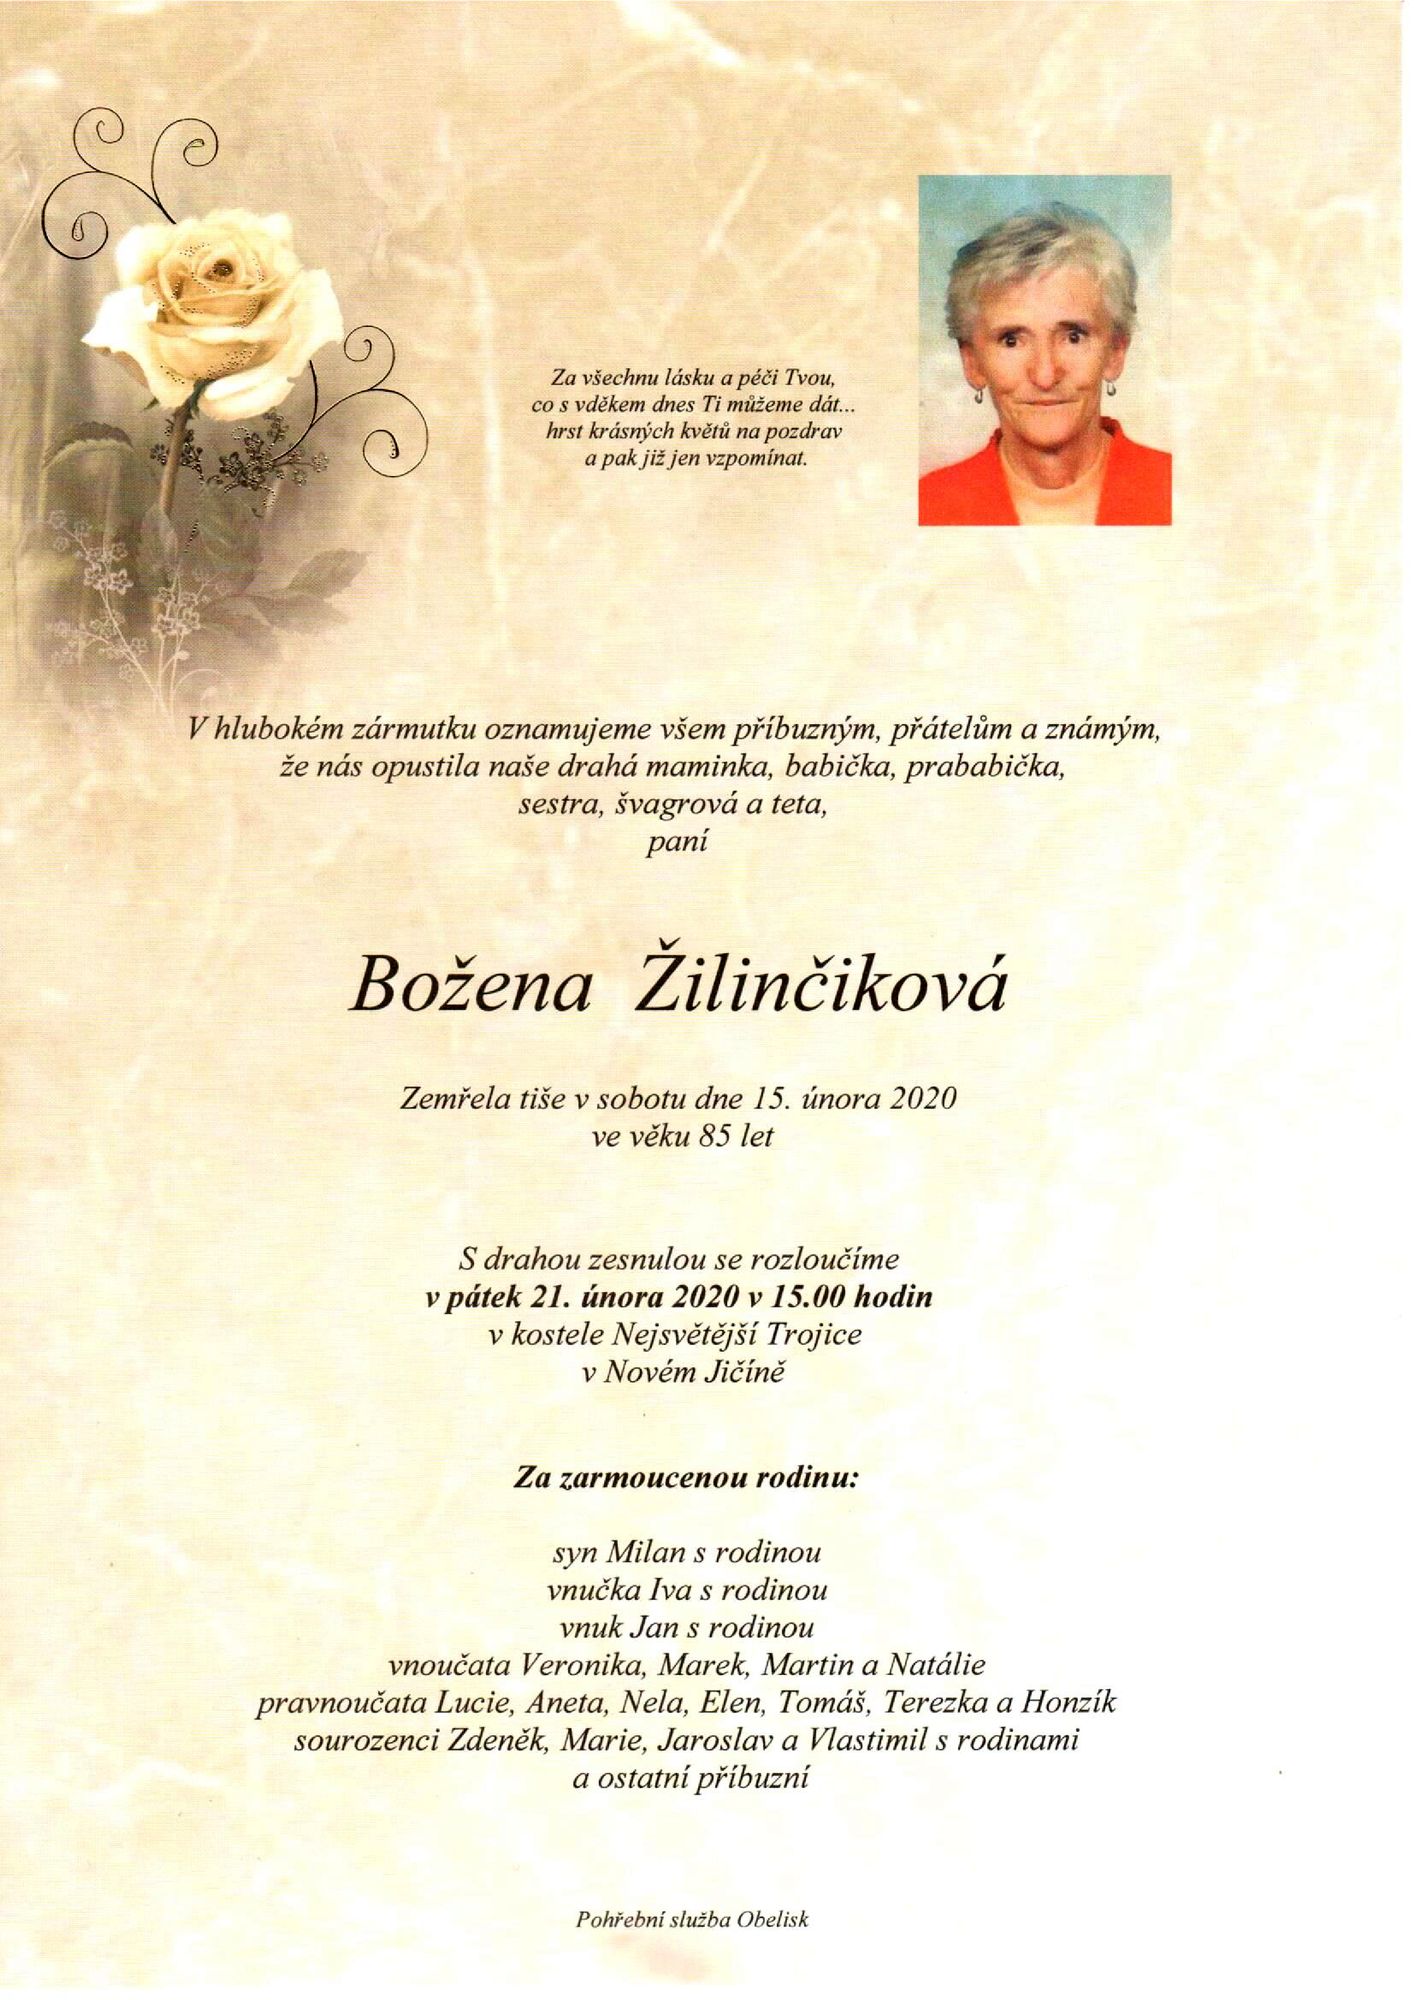 Božena Žilinčíková